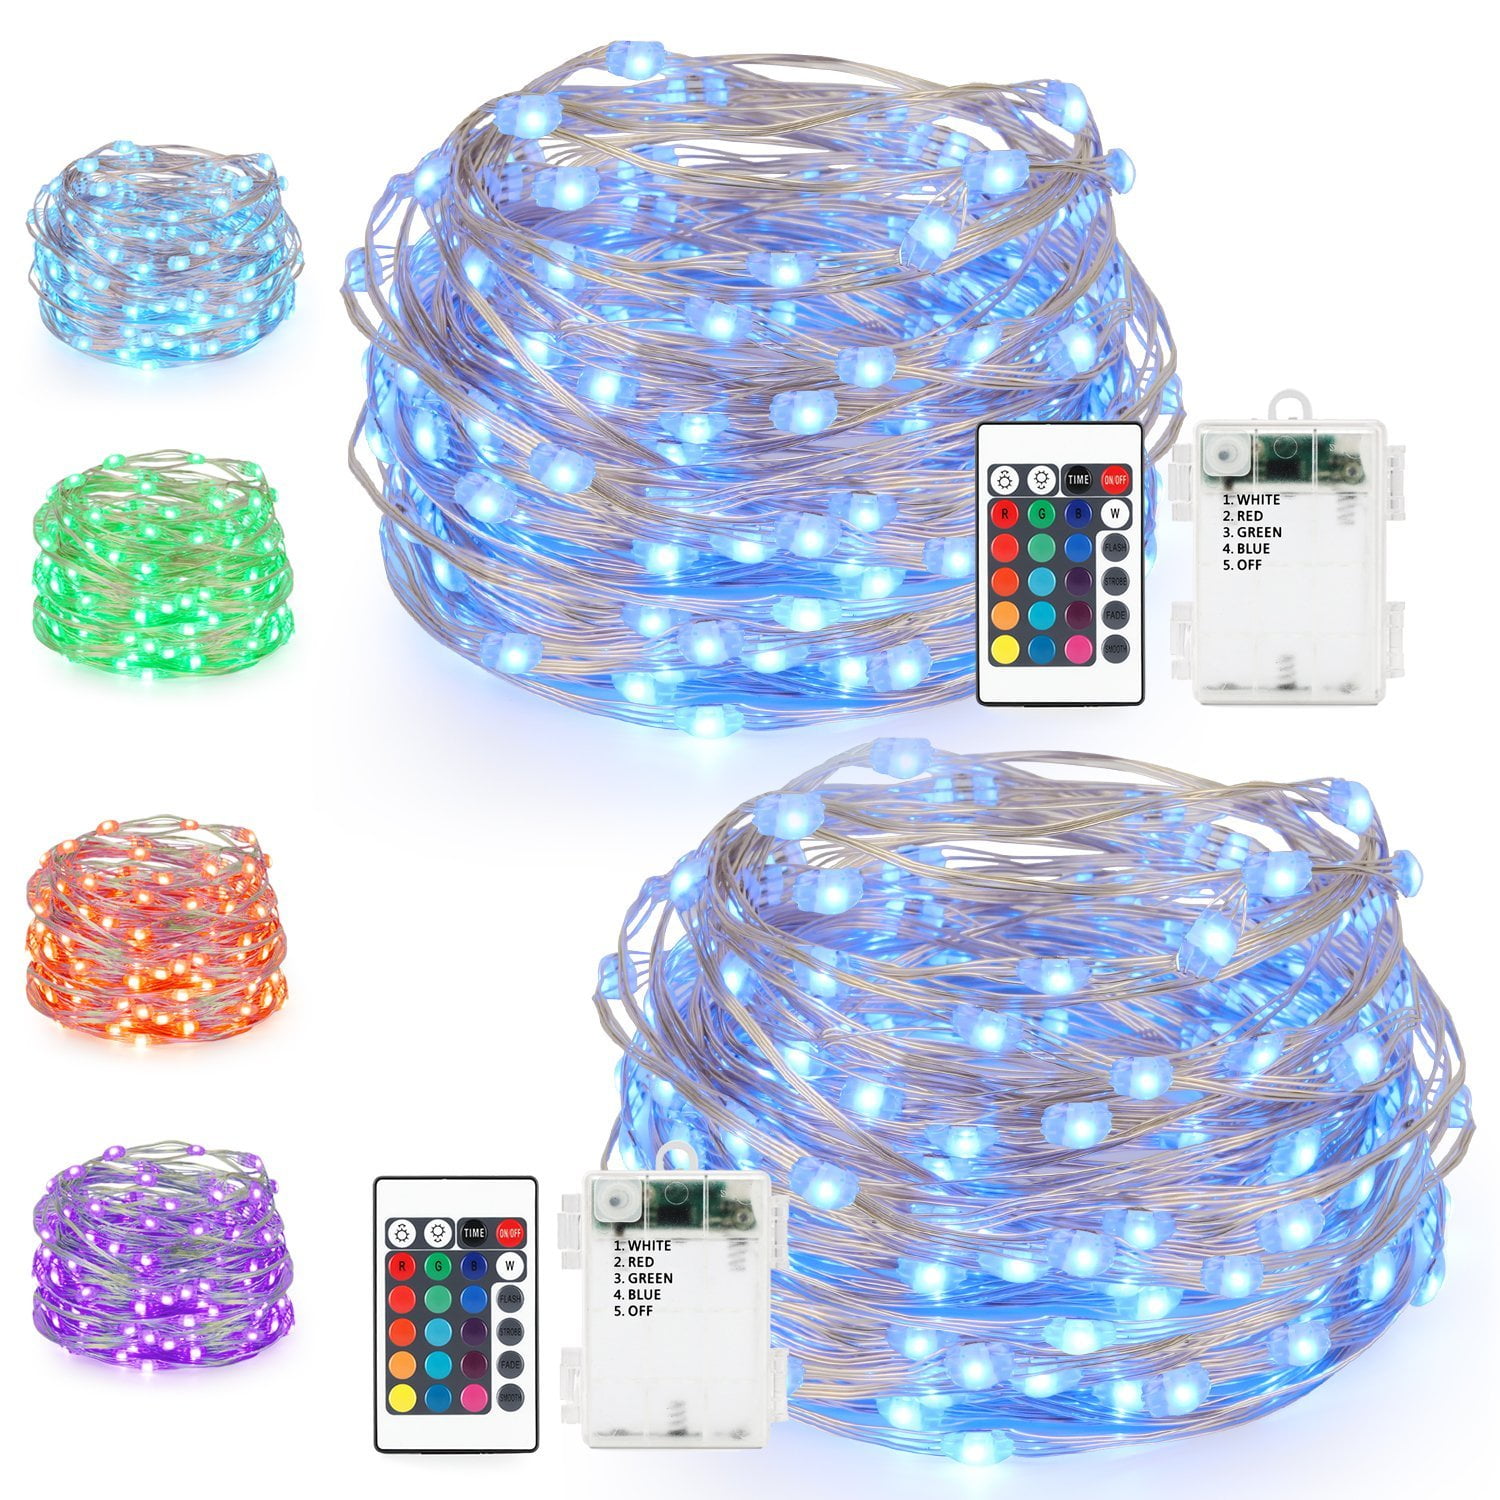 Led String Lights Kohree Battery, 24ct Color Changing Led Shatterproof Outdoor String Lights With Remote Thresholdtm